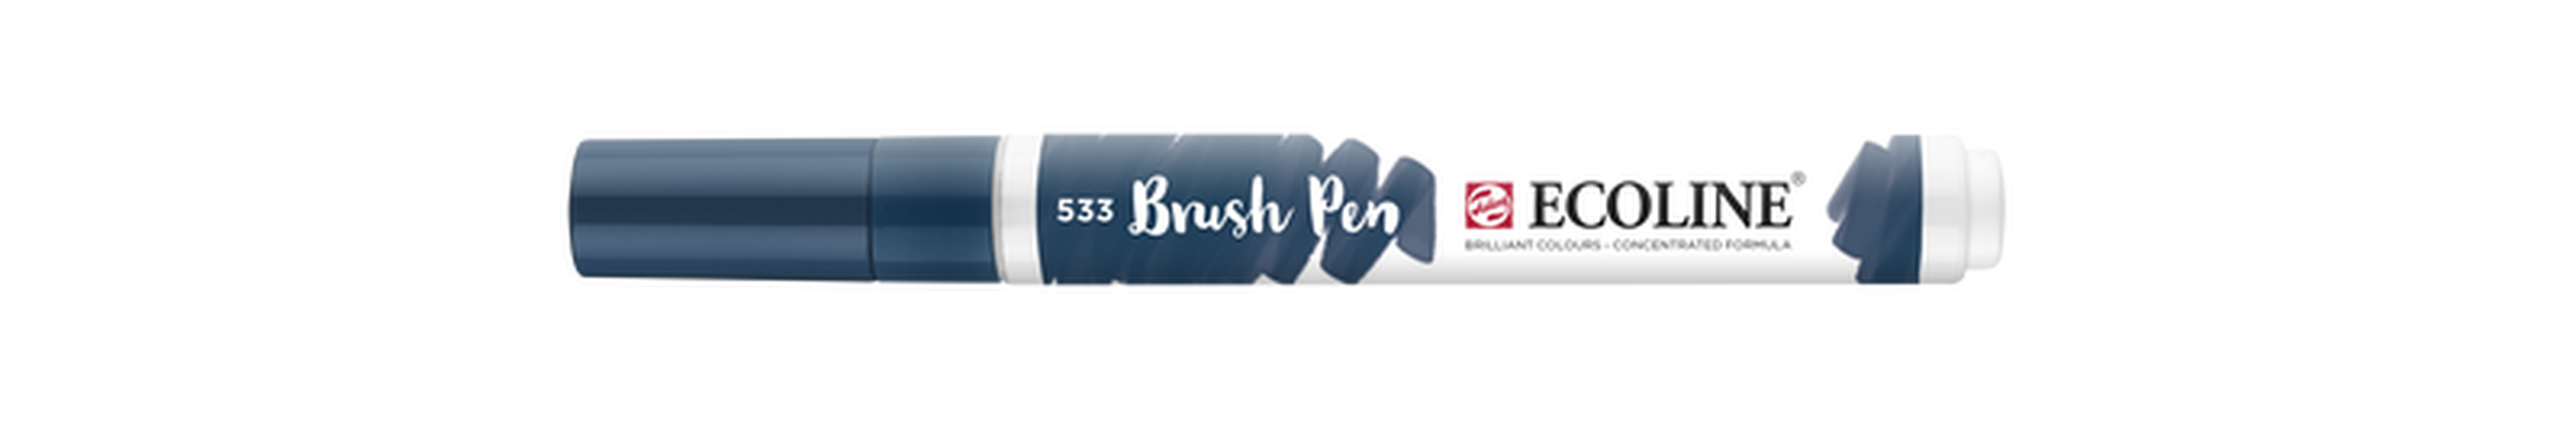 Talens Brush Pen Ecoline Number 533 Color Indigo